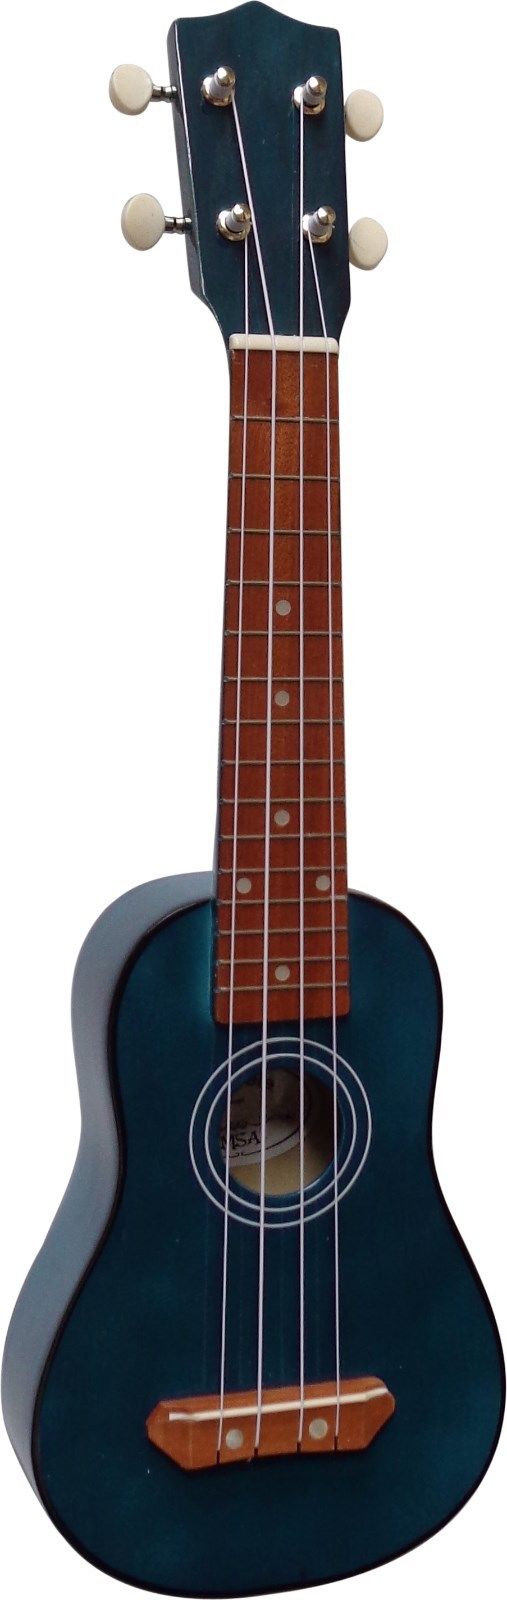 Sopránové ukulele MSA-UK8 modré